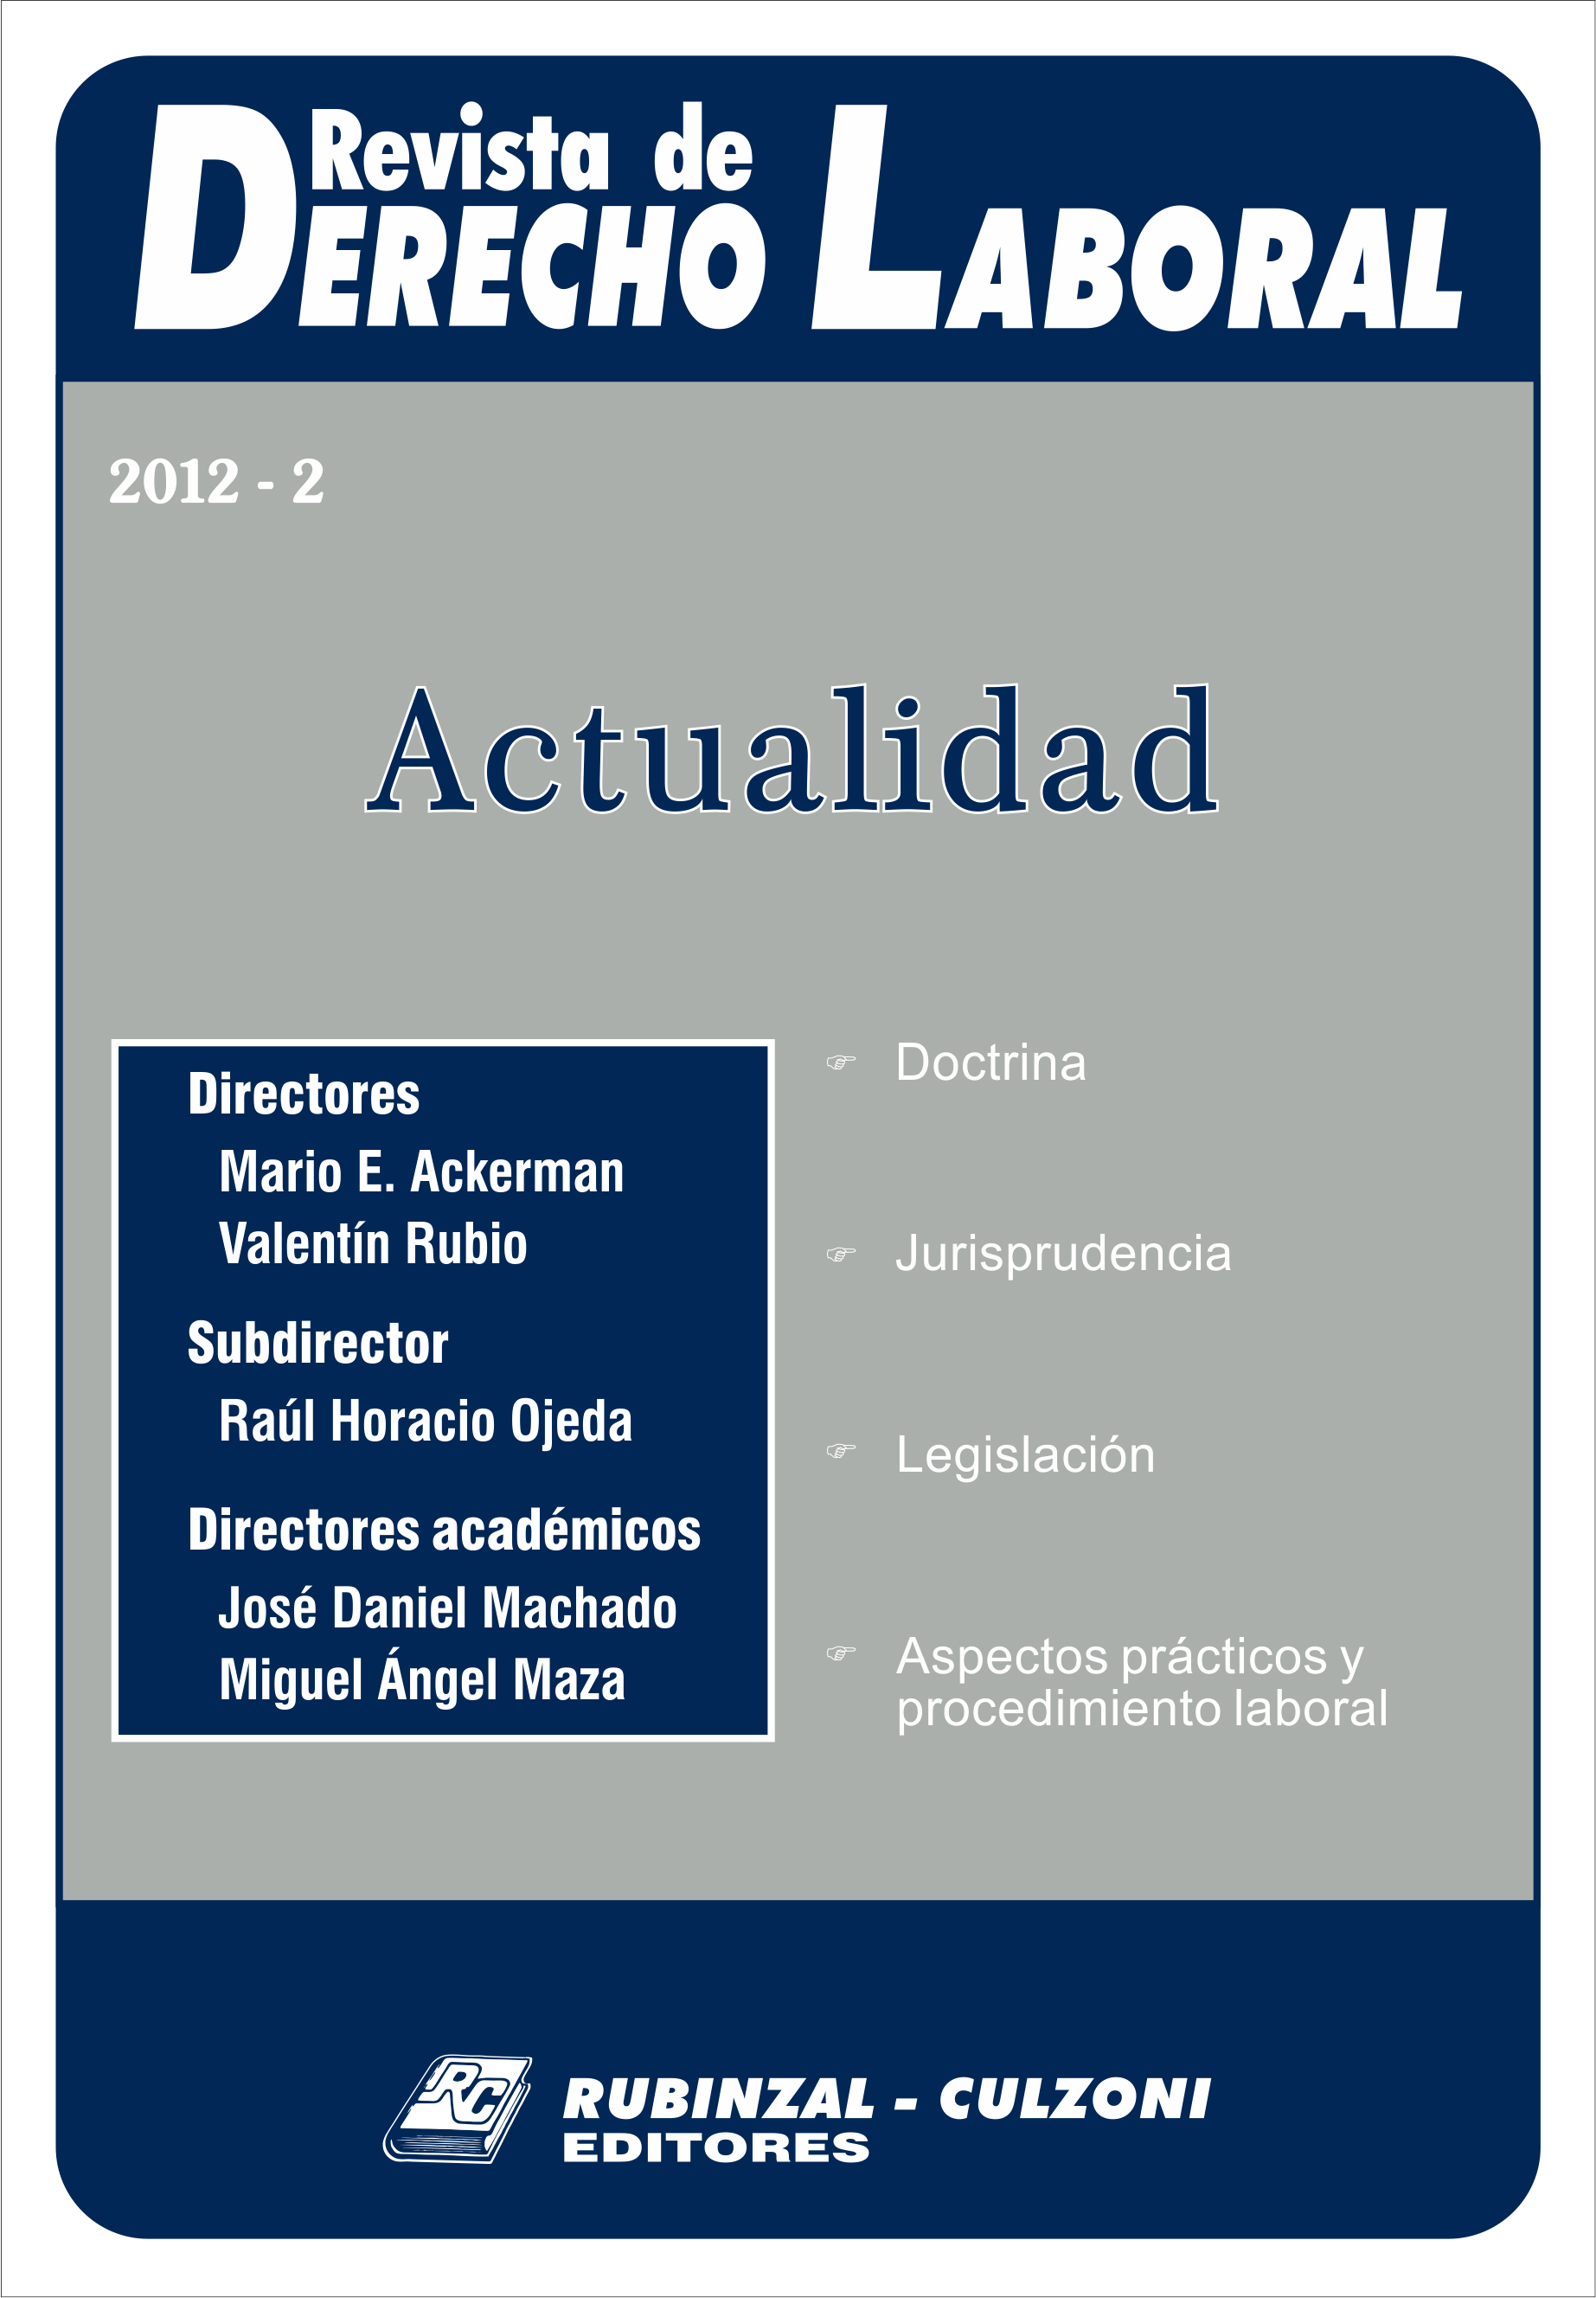 Revista de Derecho Laboral Actualidad - Año 2012 - 2